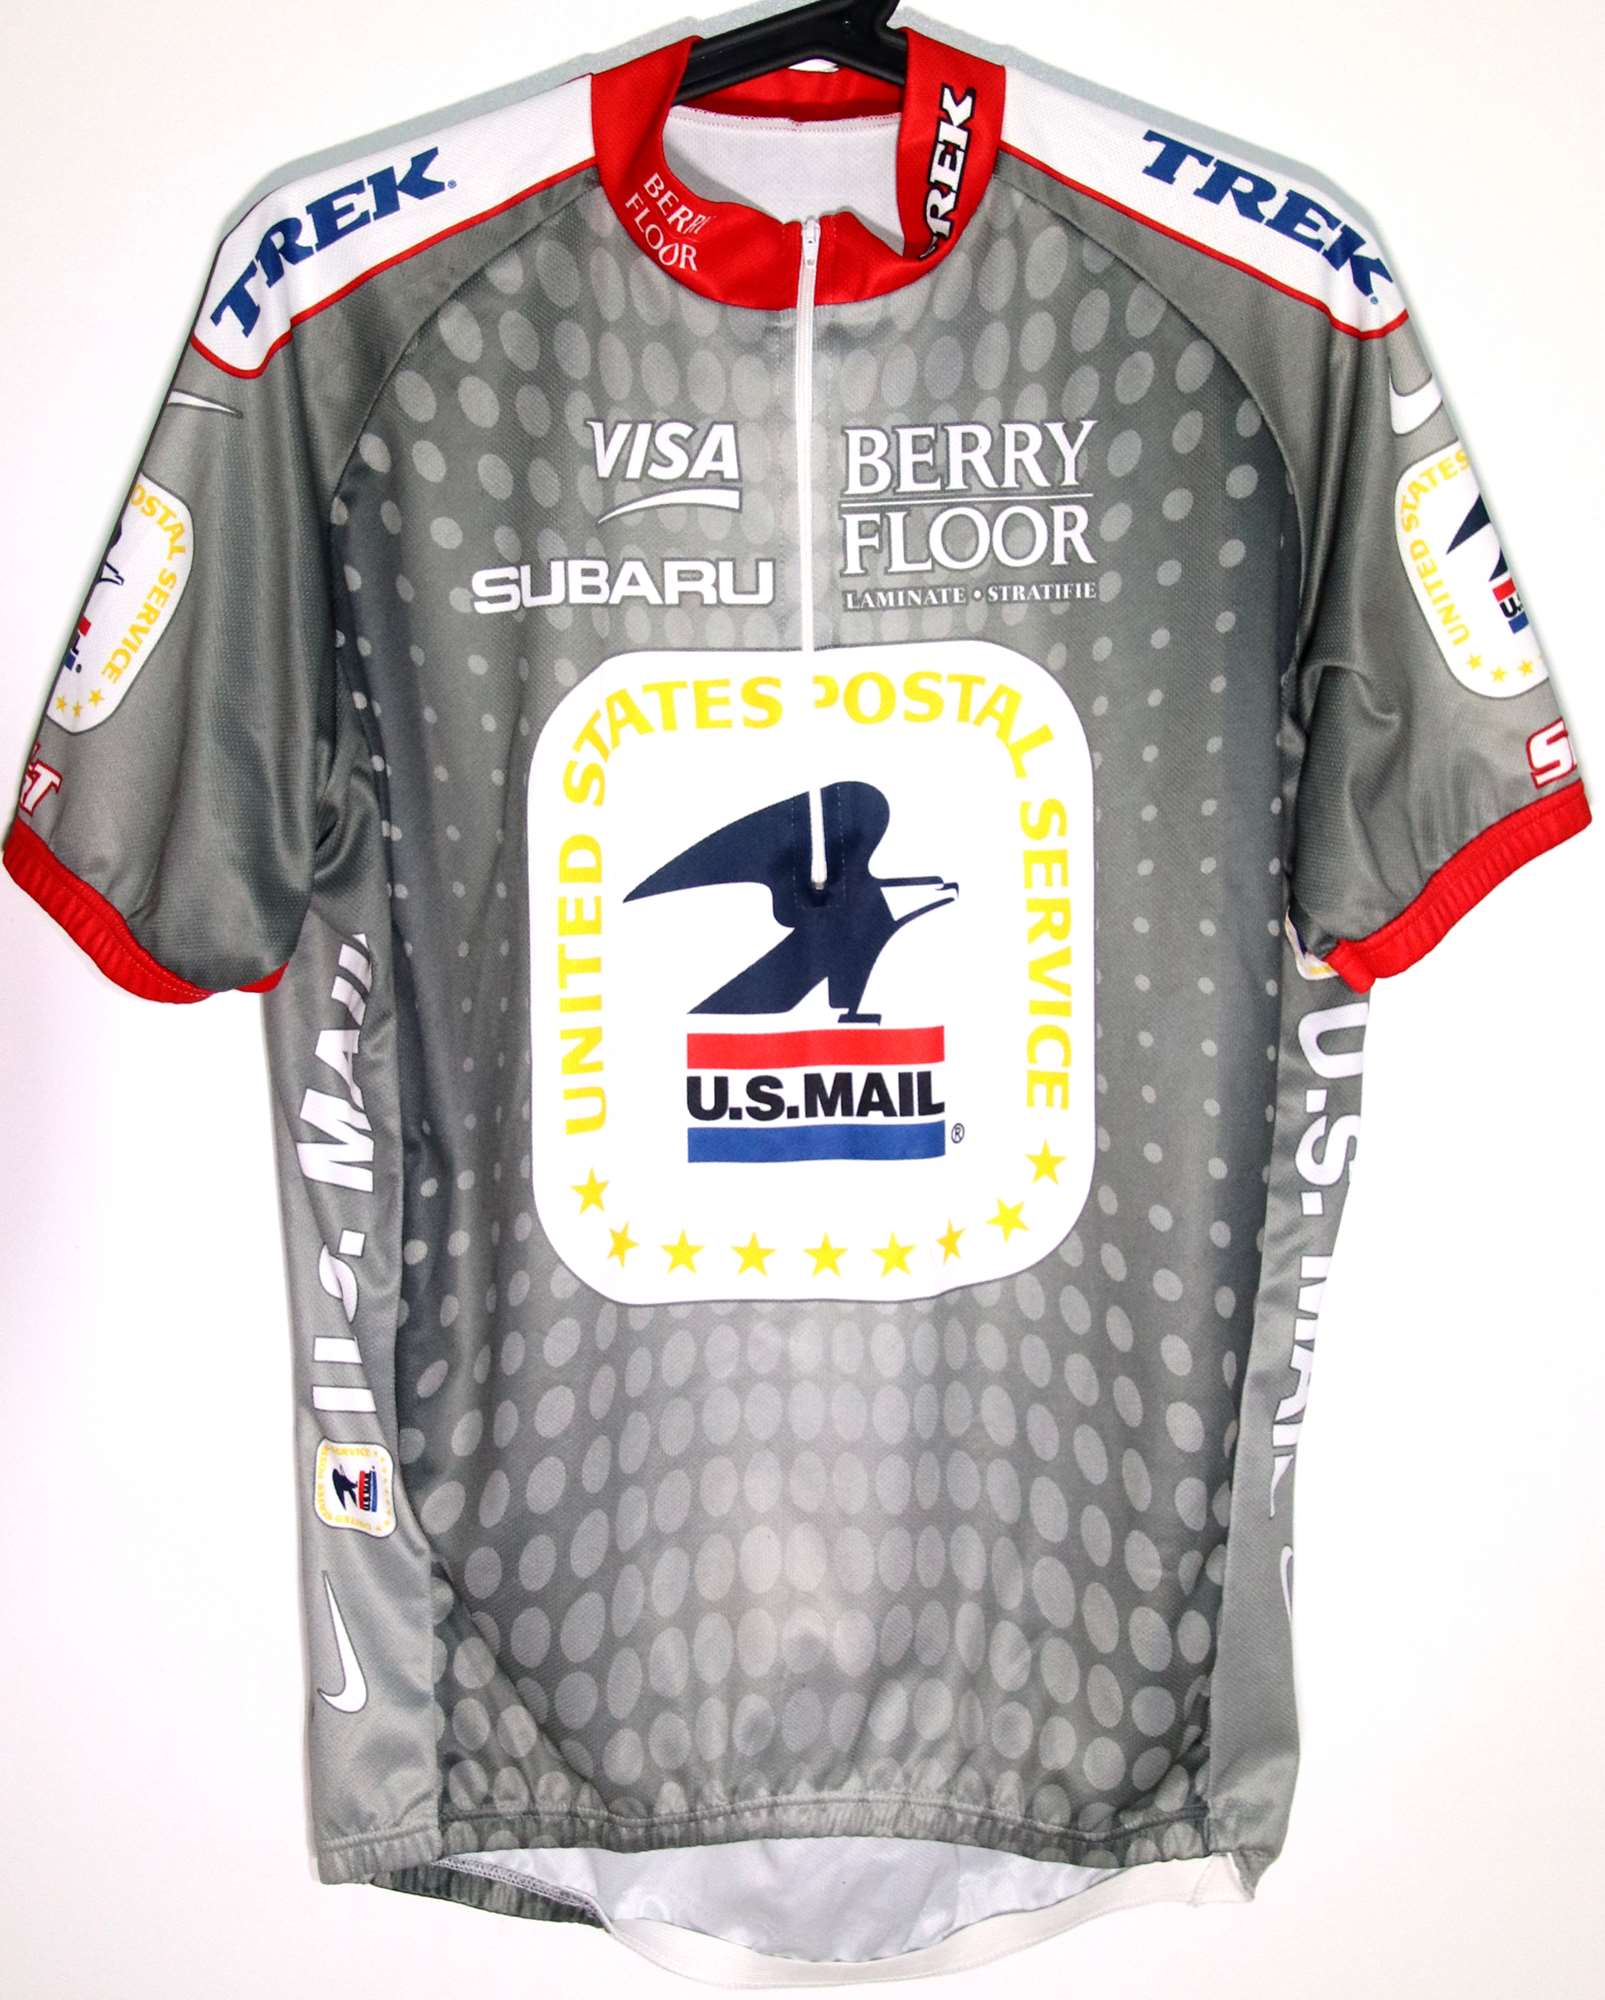 US Postal special tour de France 2003 jersey